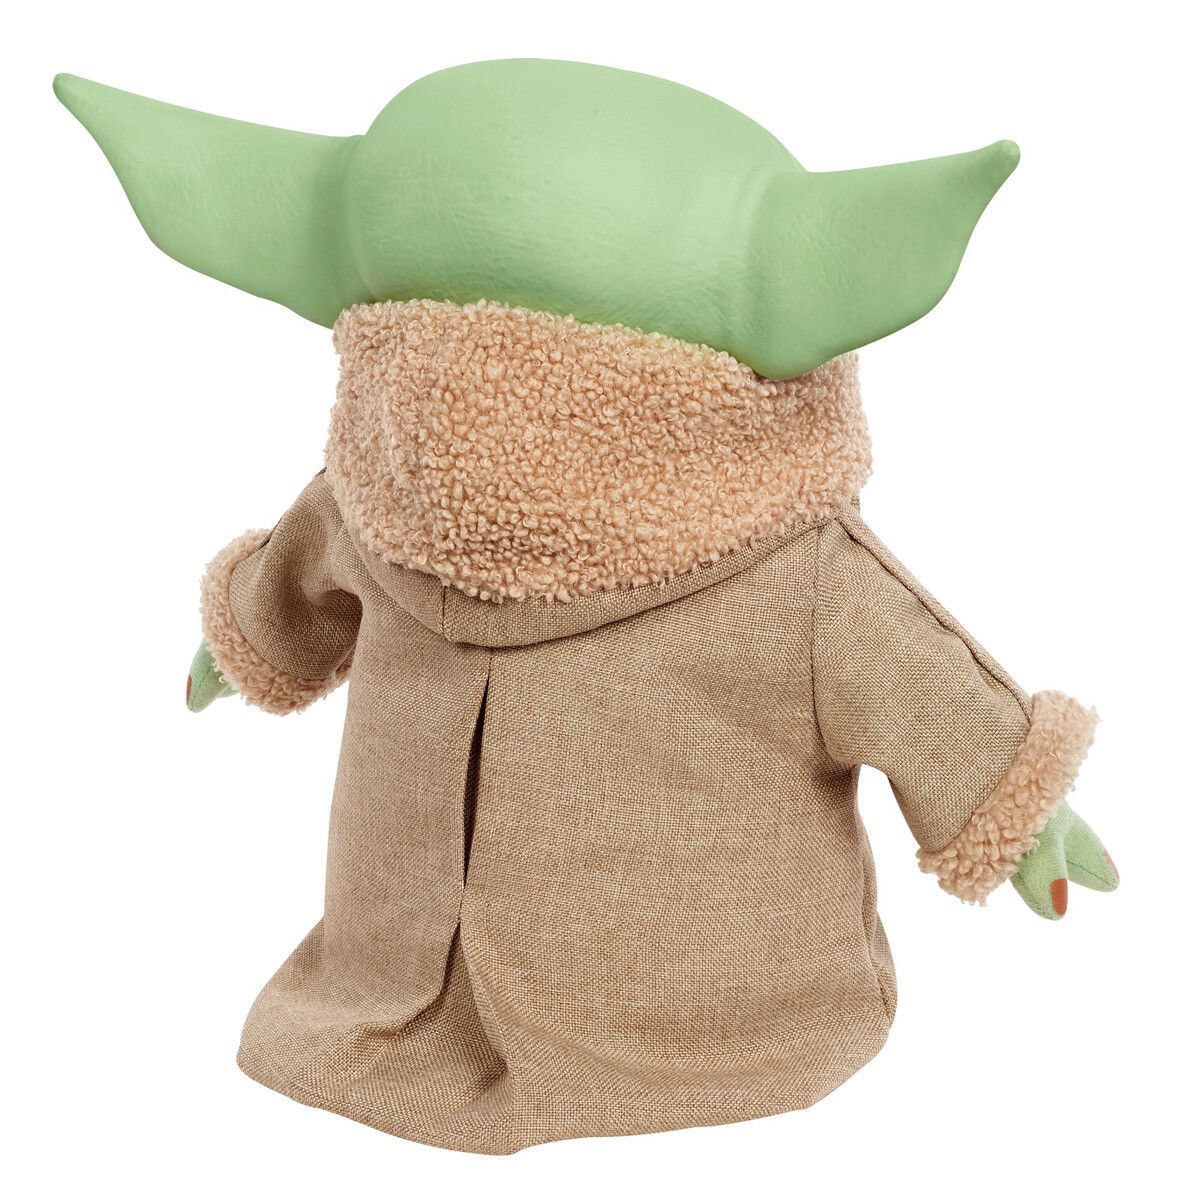 Maki - Plush Star Wars - Baby Yoda